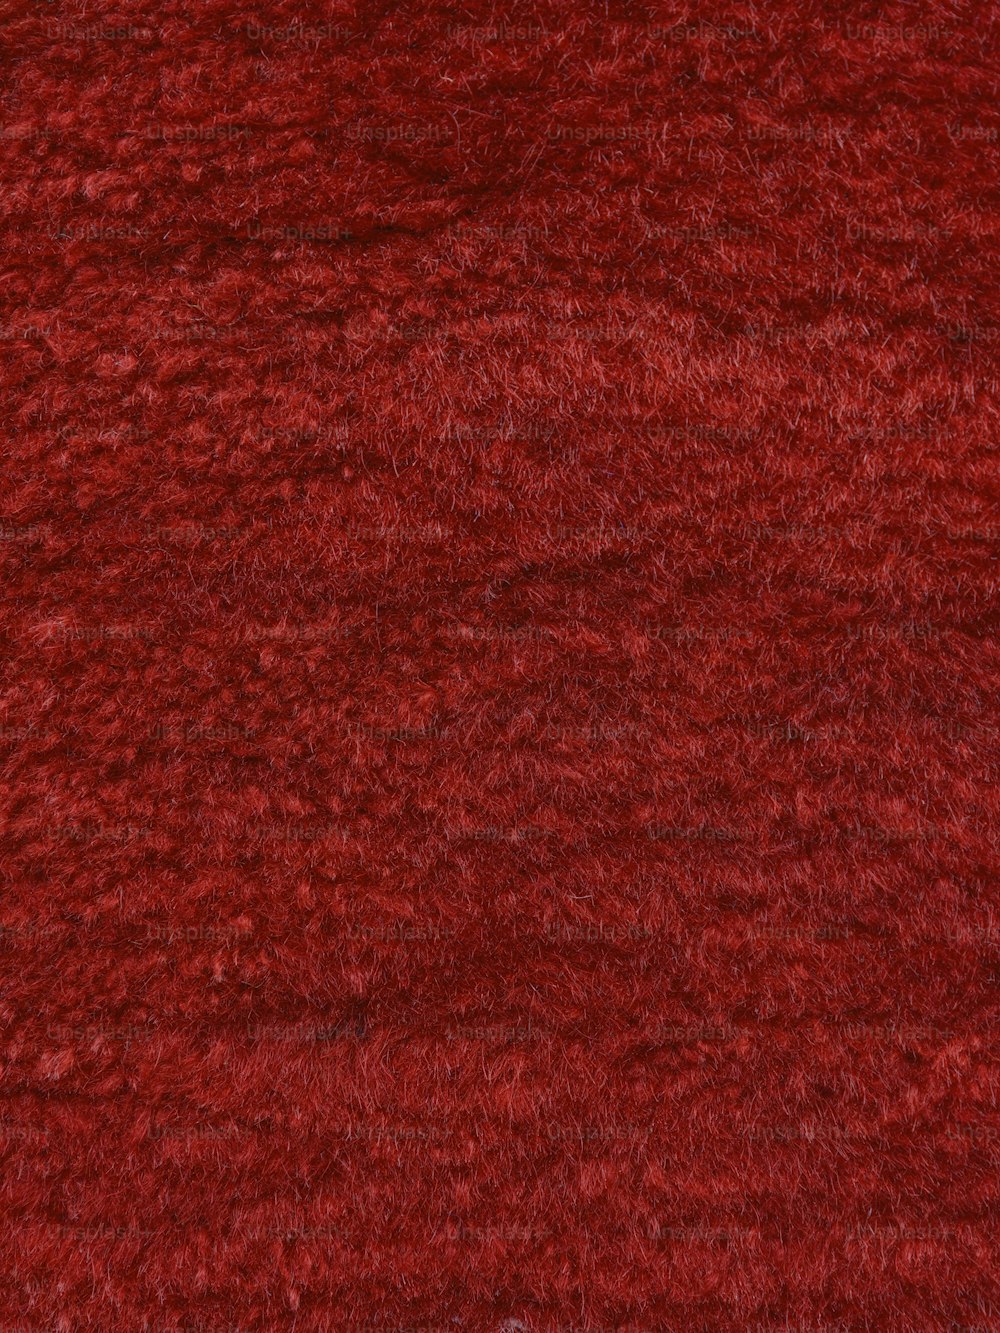 Un primo piano di un tappeto rosso